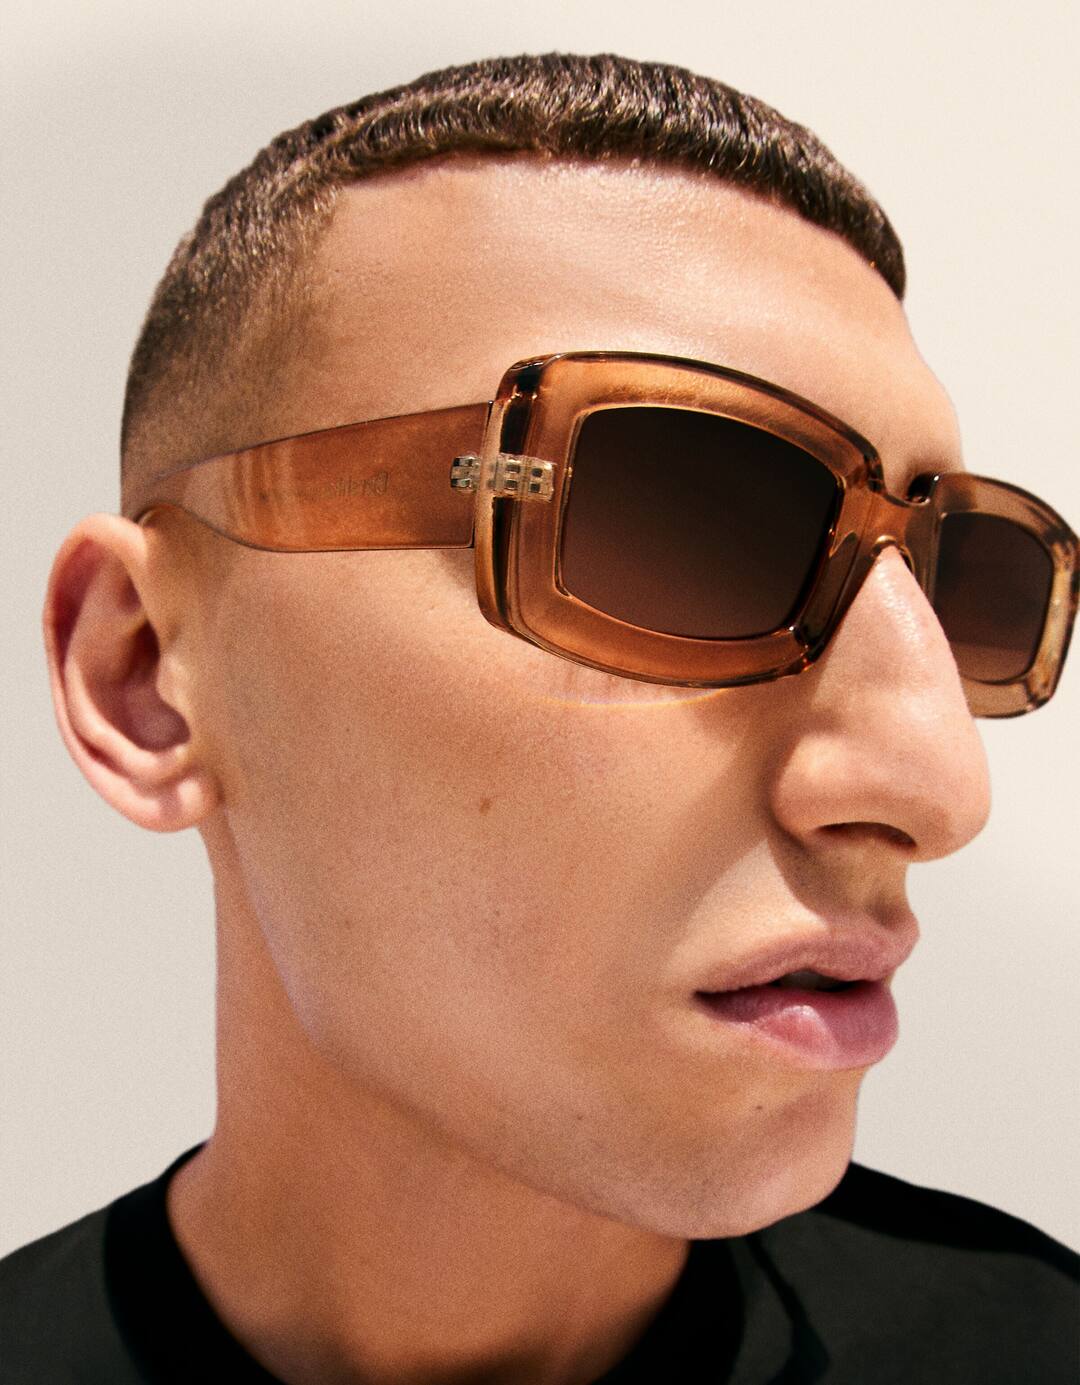 Transparent rectangular sunglasses